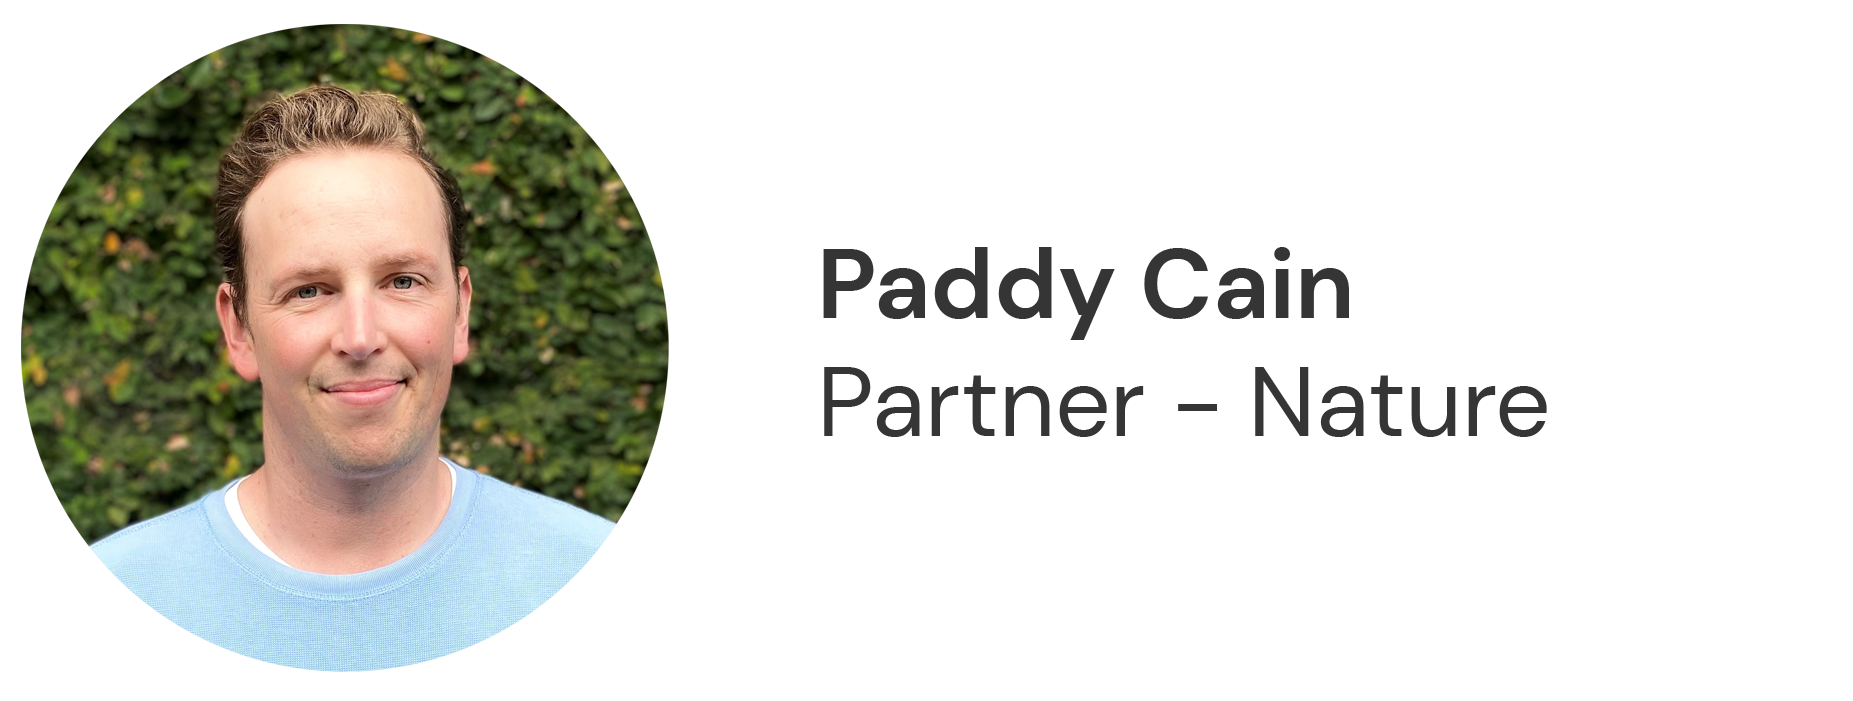 Paddy Cain, Partner